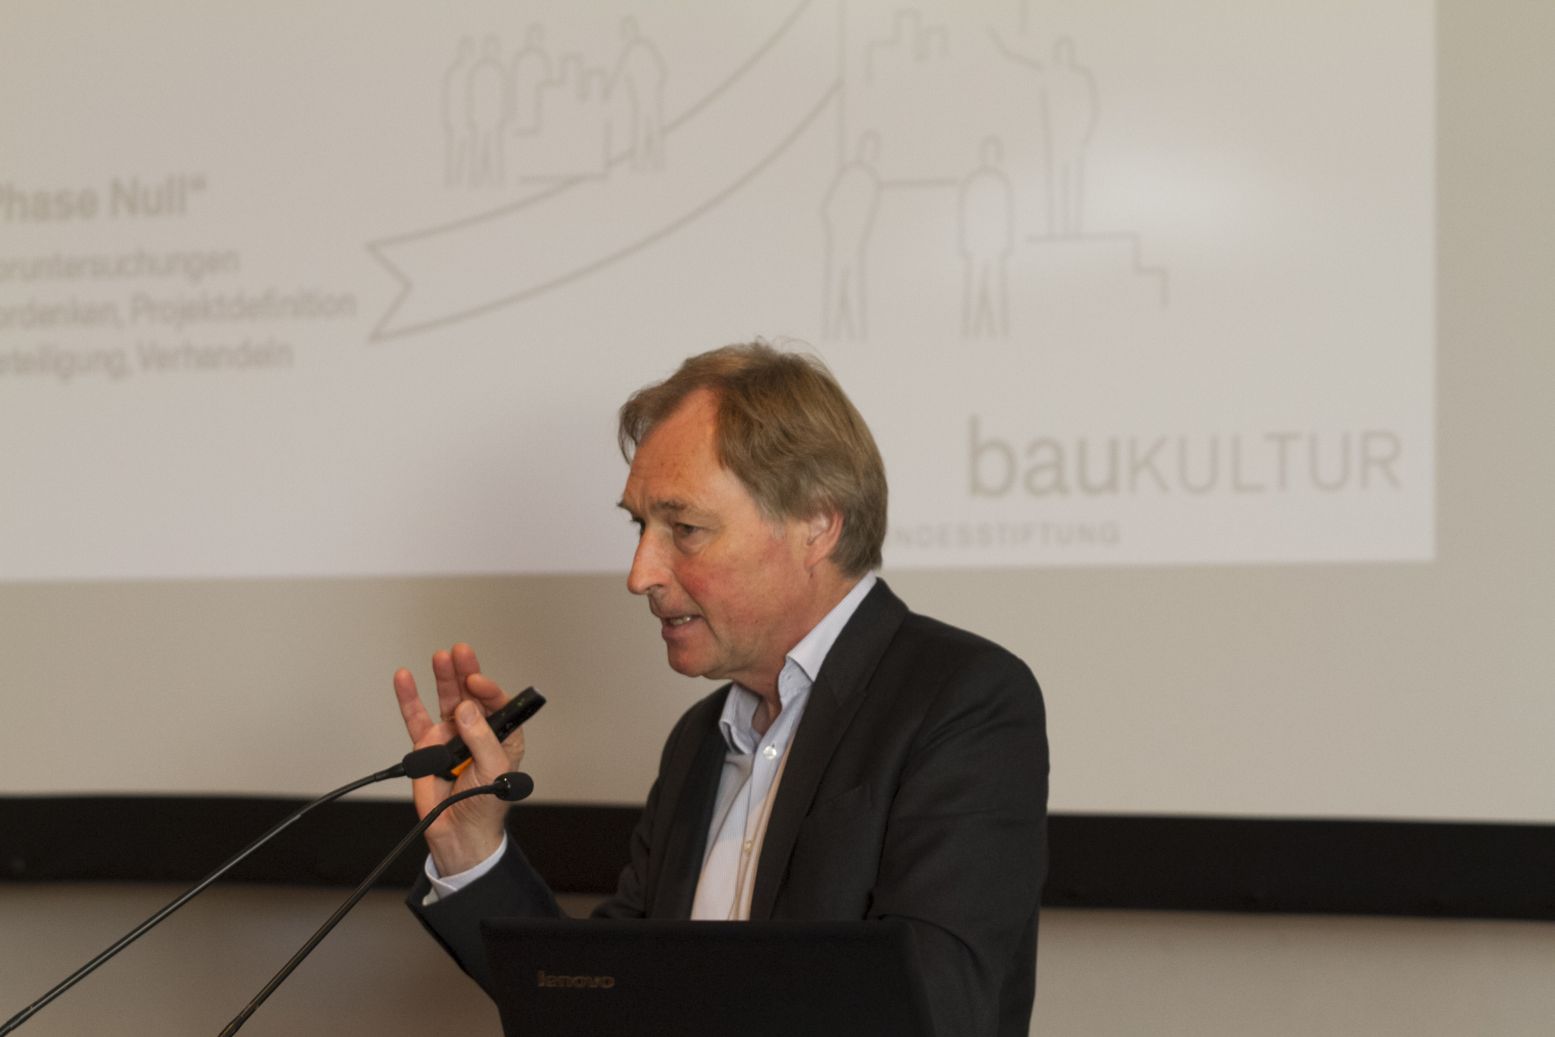 Der Vorstandsvorsitzende der Bundesstiftung Baukultur; Herr Reiner Nagel;  Foto: A. J. Schmidt